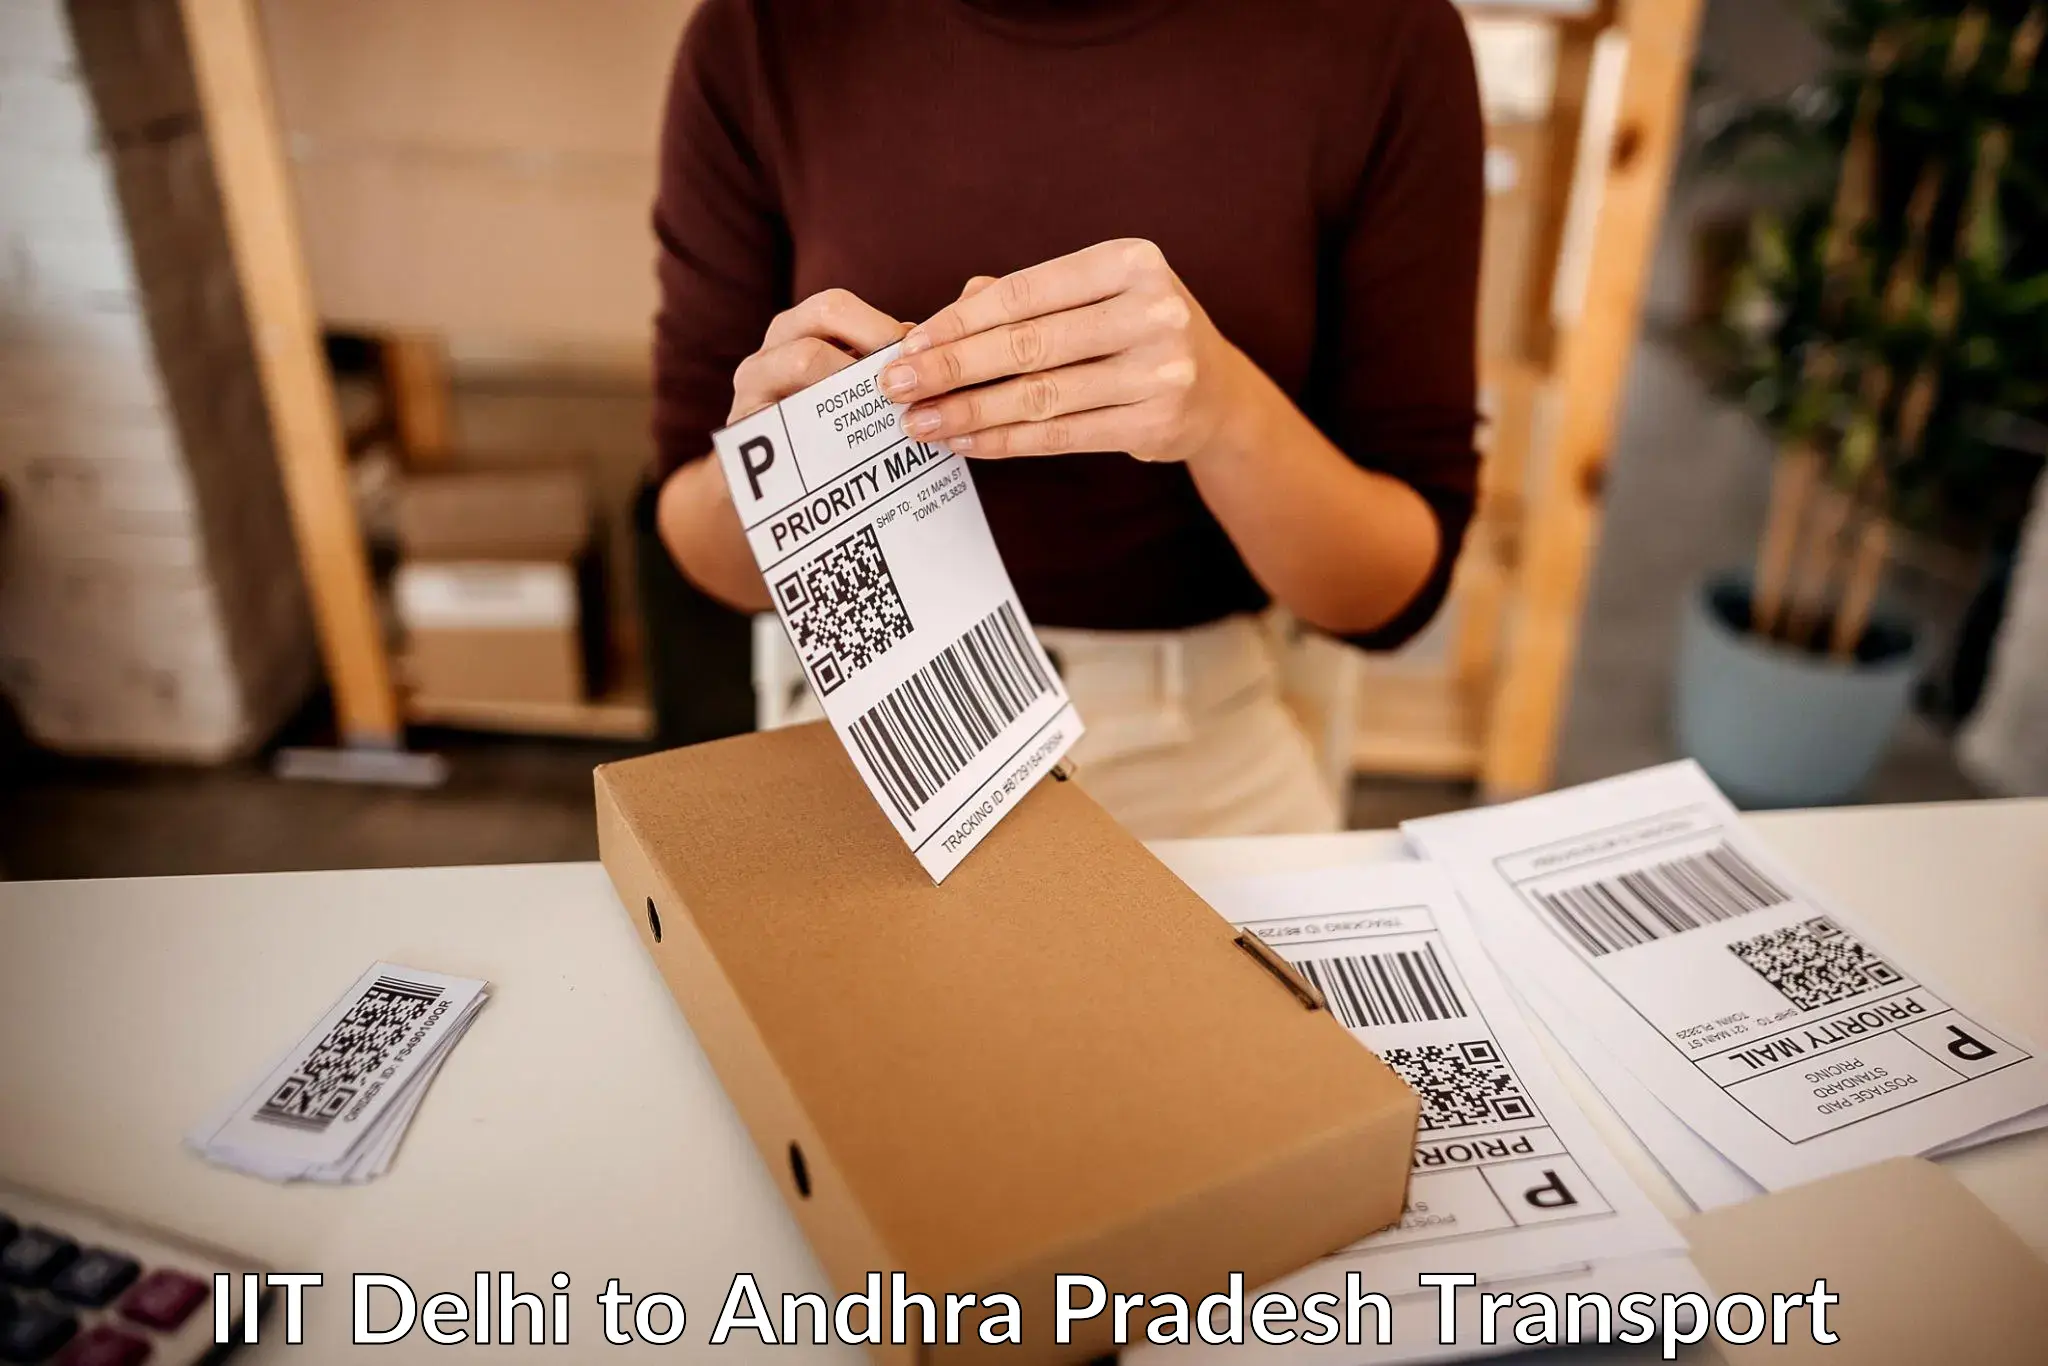 Delivery service IIT Delhi to Mantada